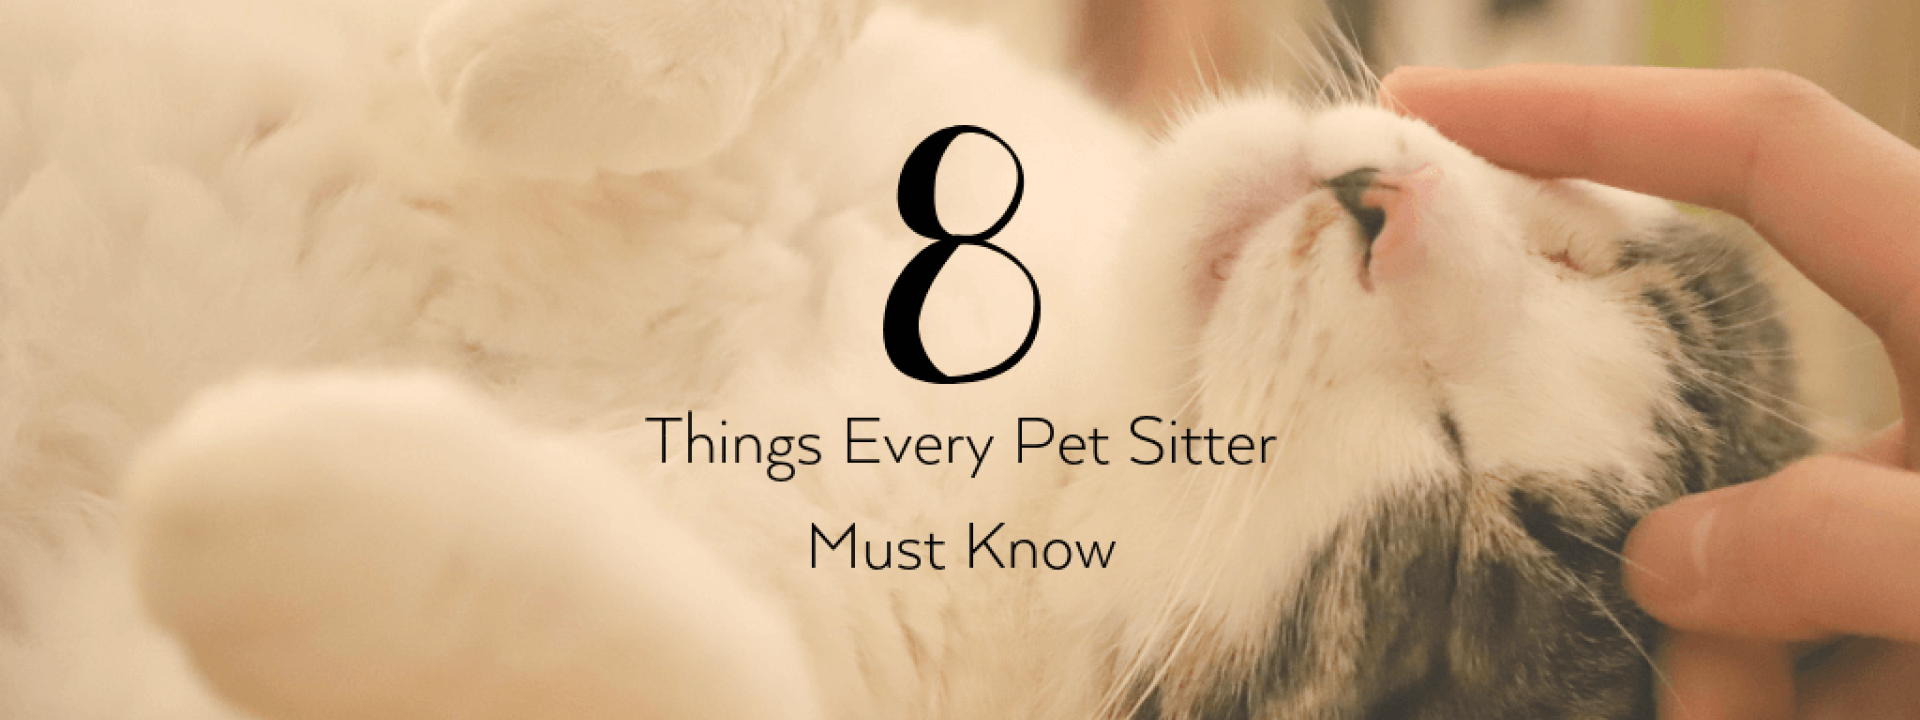 Pet-sitter-blog-header.png